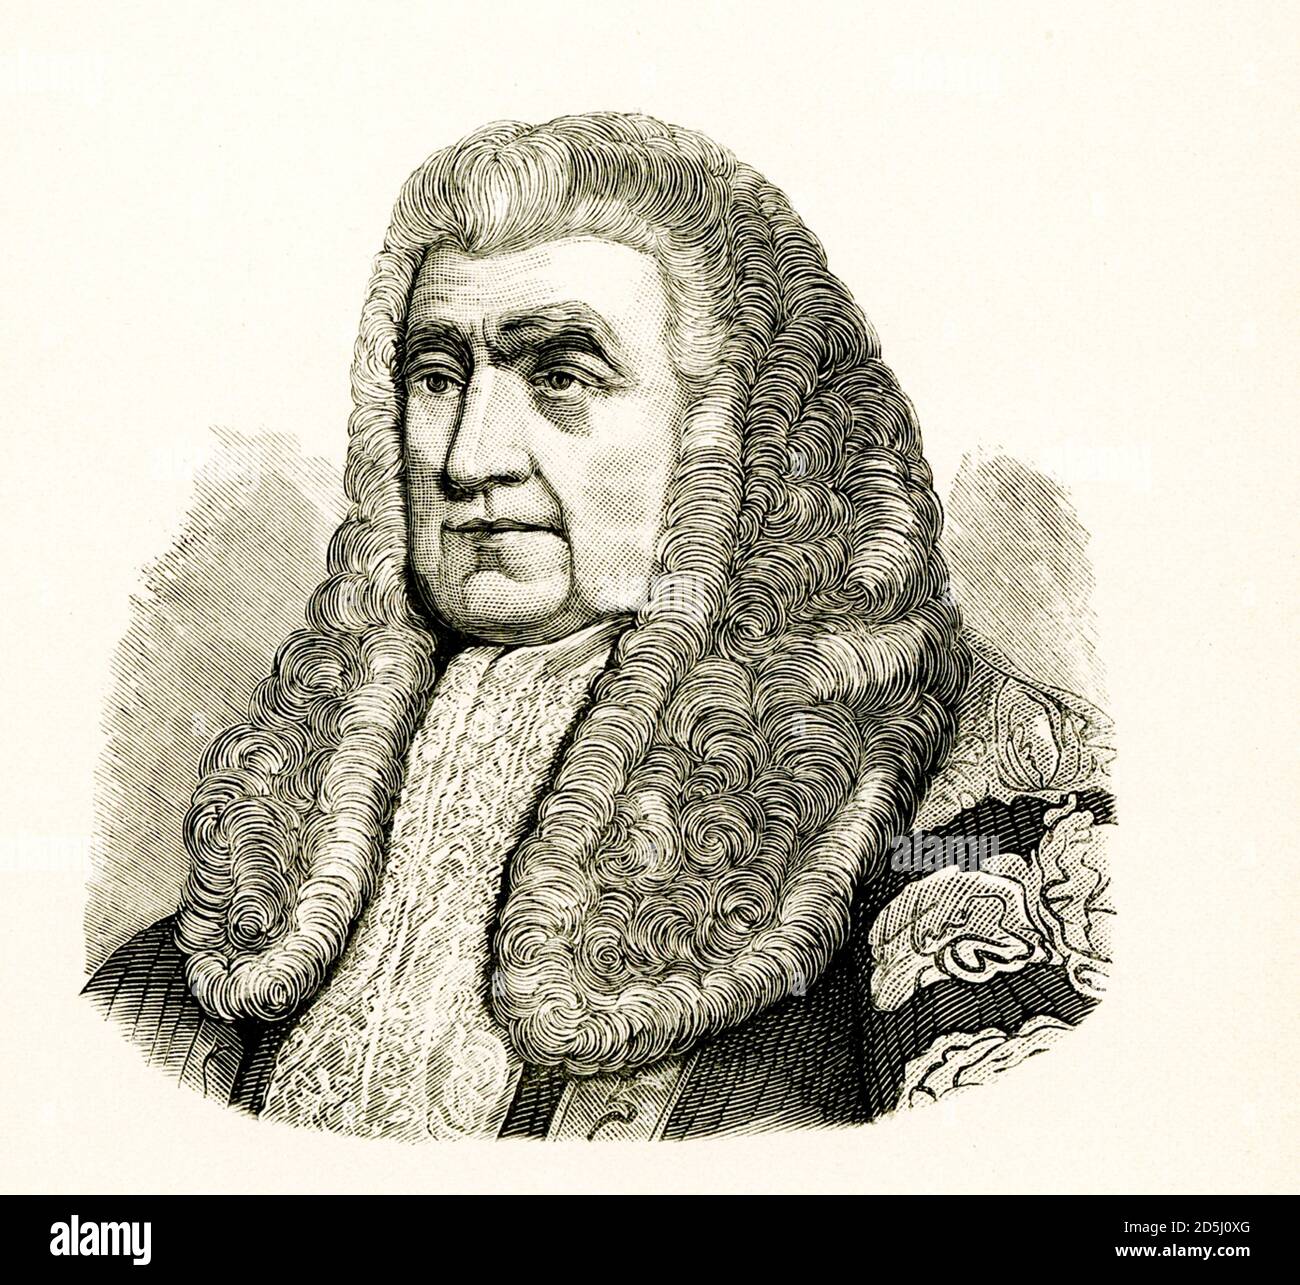 John Scott, 1er comte d'Eldon, était avocat et homme politique britannique. Il a servi comme Haut Chancelier de Grande-Bretagne entre 1801 et 1806 et de nouveau entre 1807 et 1827. Conservateur inflexible, il s'est opposé à l'émancipation politique catholique romaine, à l'abolition de l'emprisonnement en tant que punition pour les débiteurs, à l'abolition de la traite des esclaves et à la réforme de la Chambre des communes. Banque D'Images